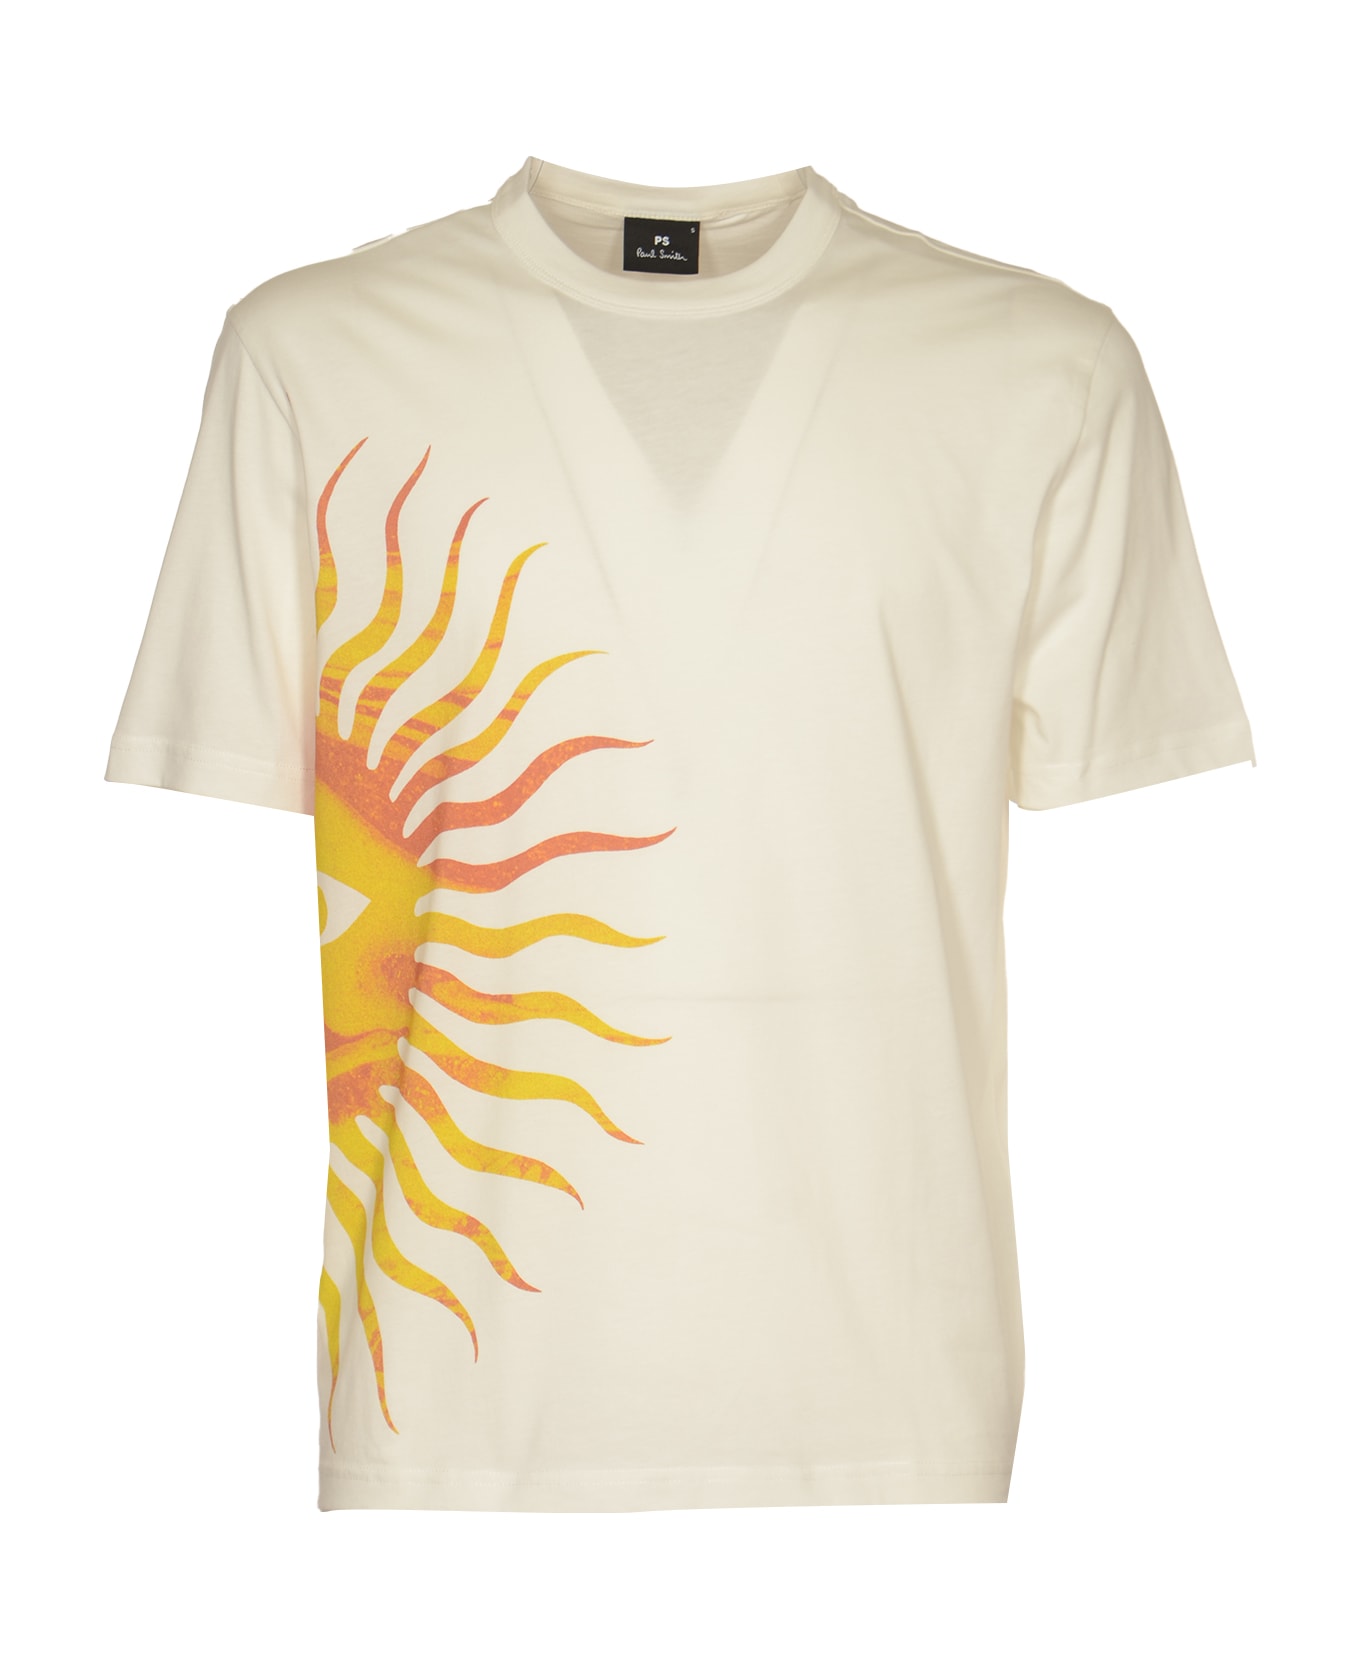 Paul Smith Sunnyside T-shirt - White シャツ